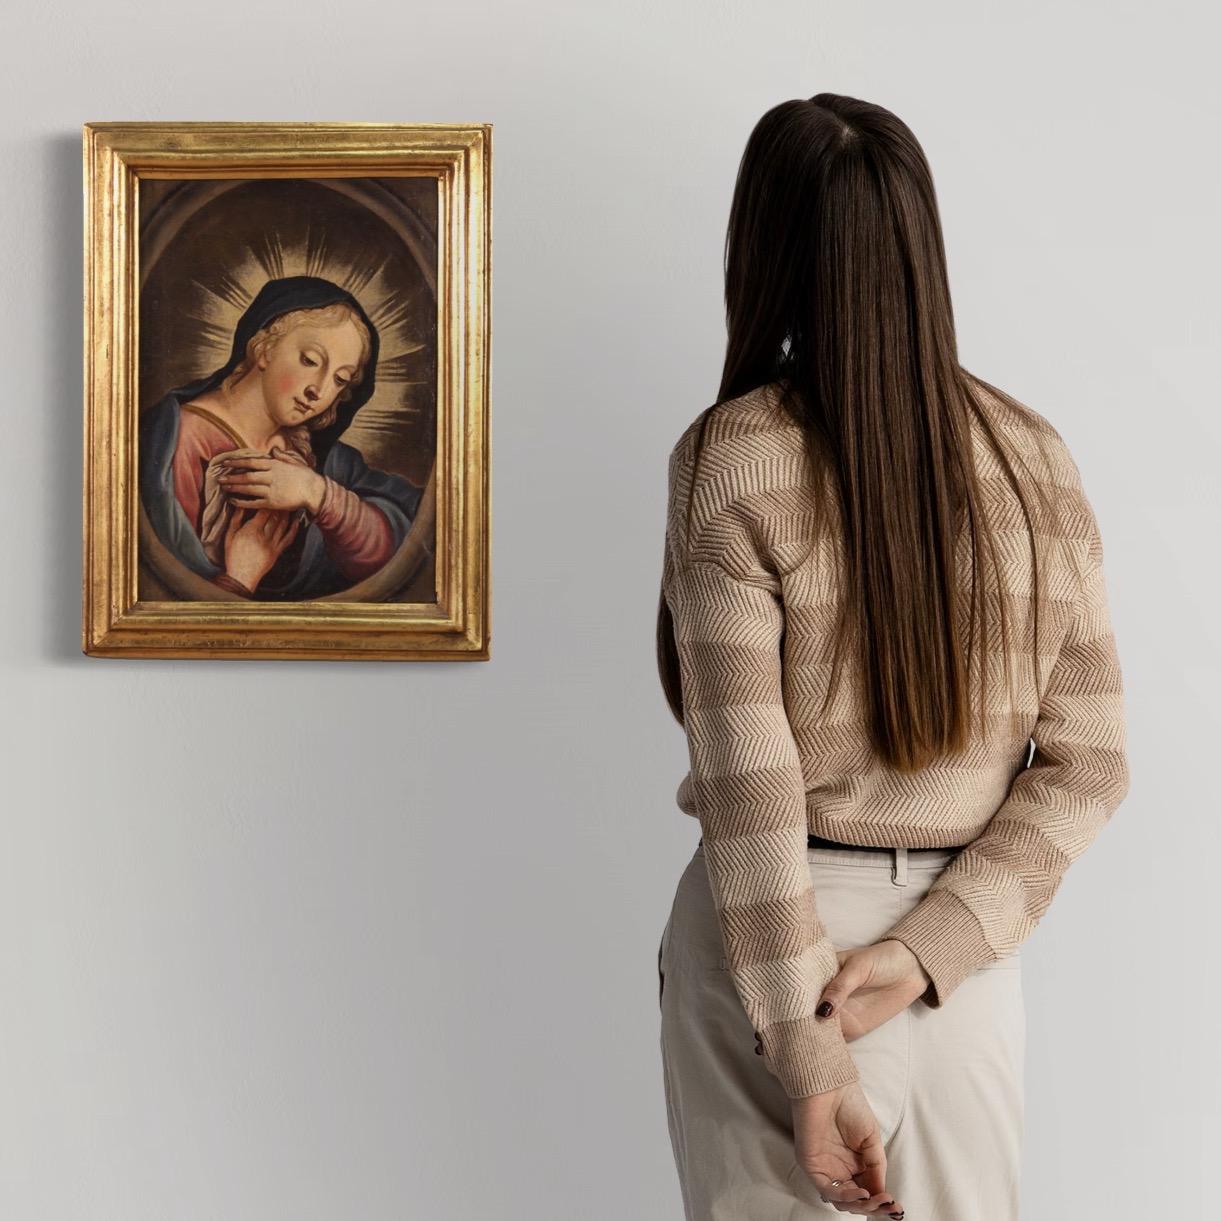 Peinture italienne ancienne de la seconde moitié du XVIIIe siècle. Huile sur toile représentant un sujet religieux, la Madone en prière, de bonne qualité picturale. Il s'agit d'une iconographie très répandue depuis le XVIIe siècle dans des contextes